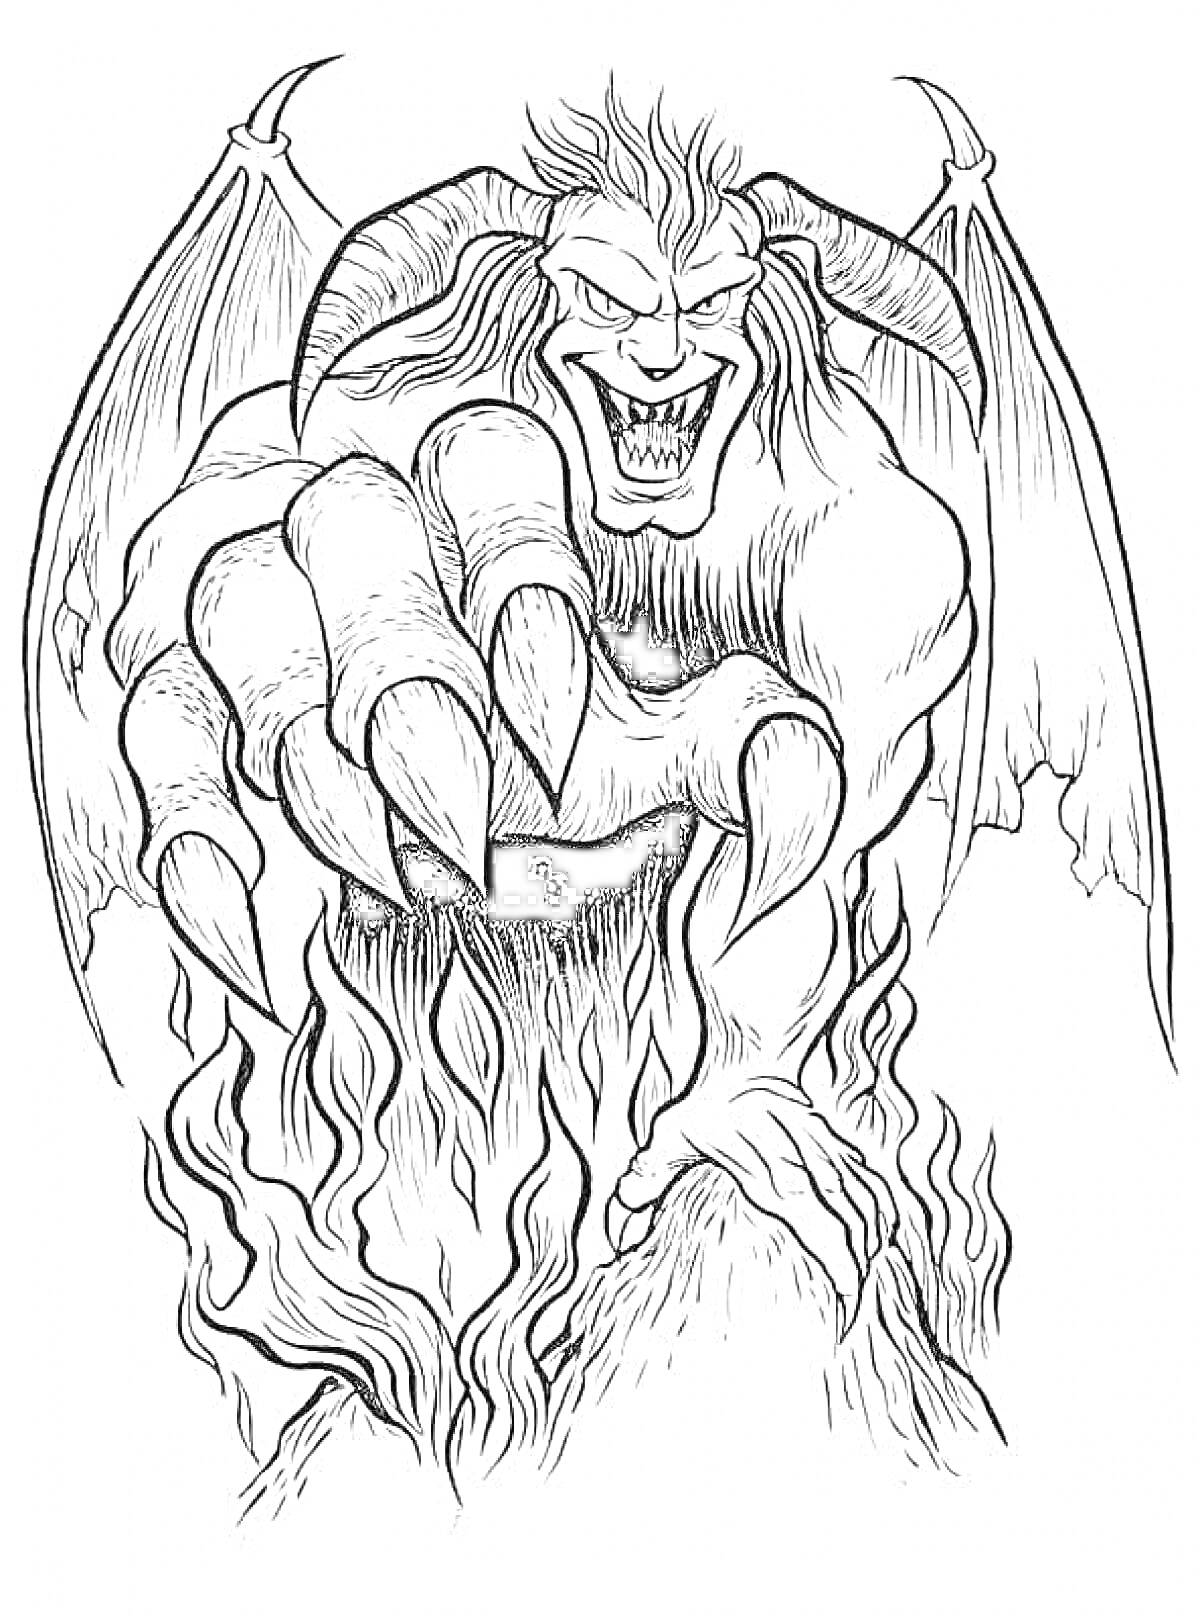 Раскраска Демон с крыльями и когтями, вырывающийся из пламени